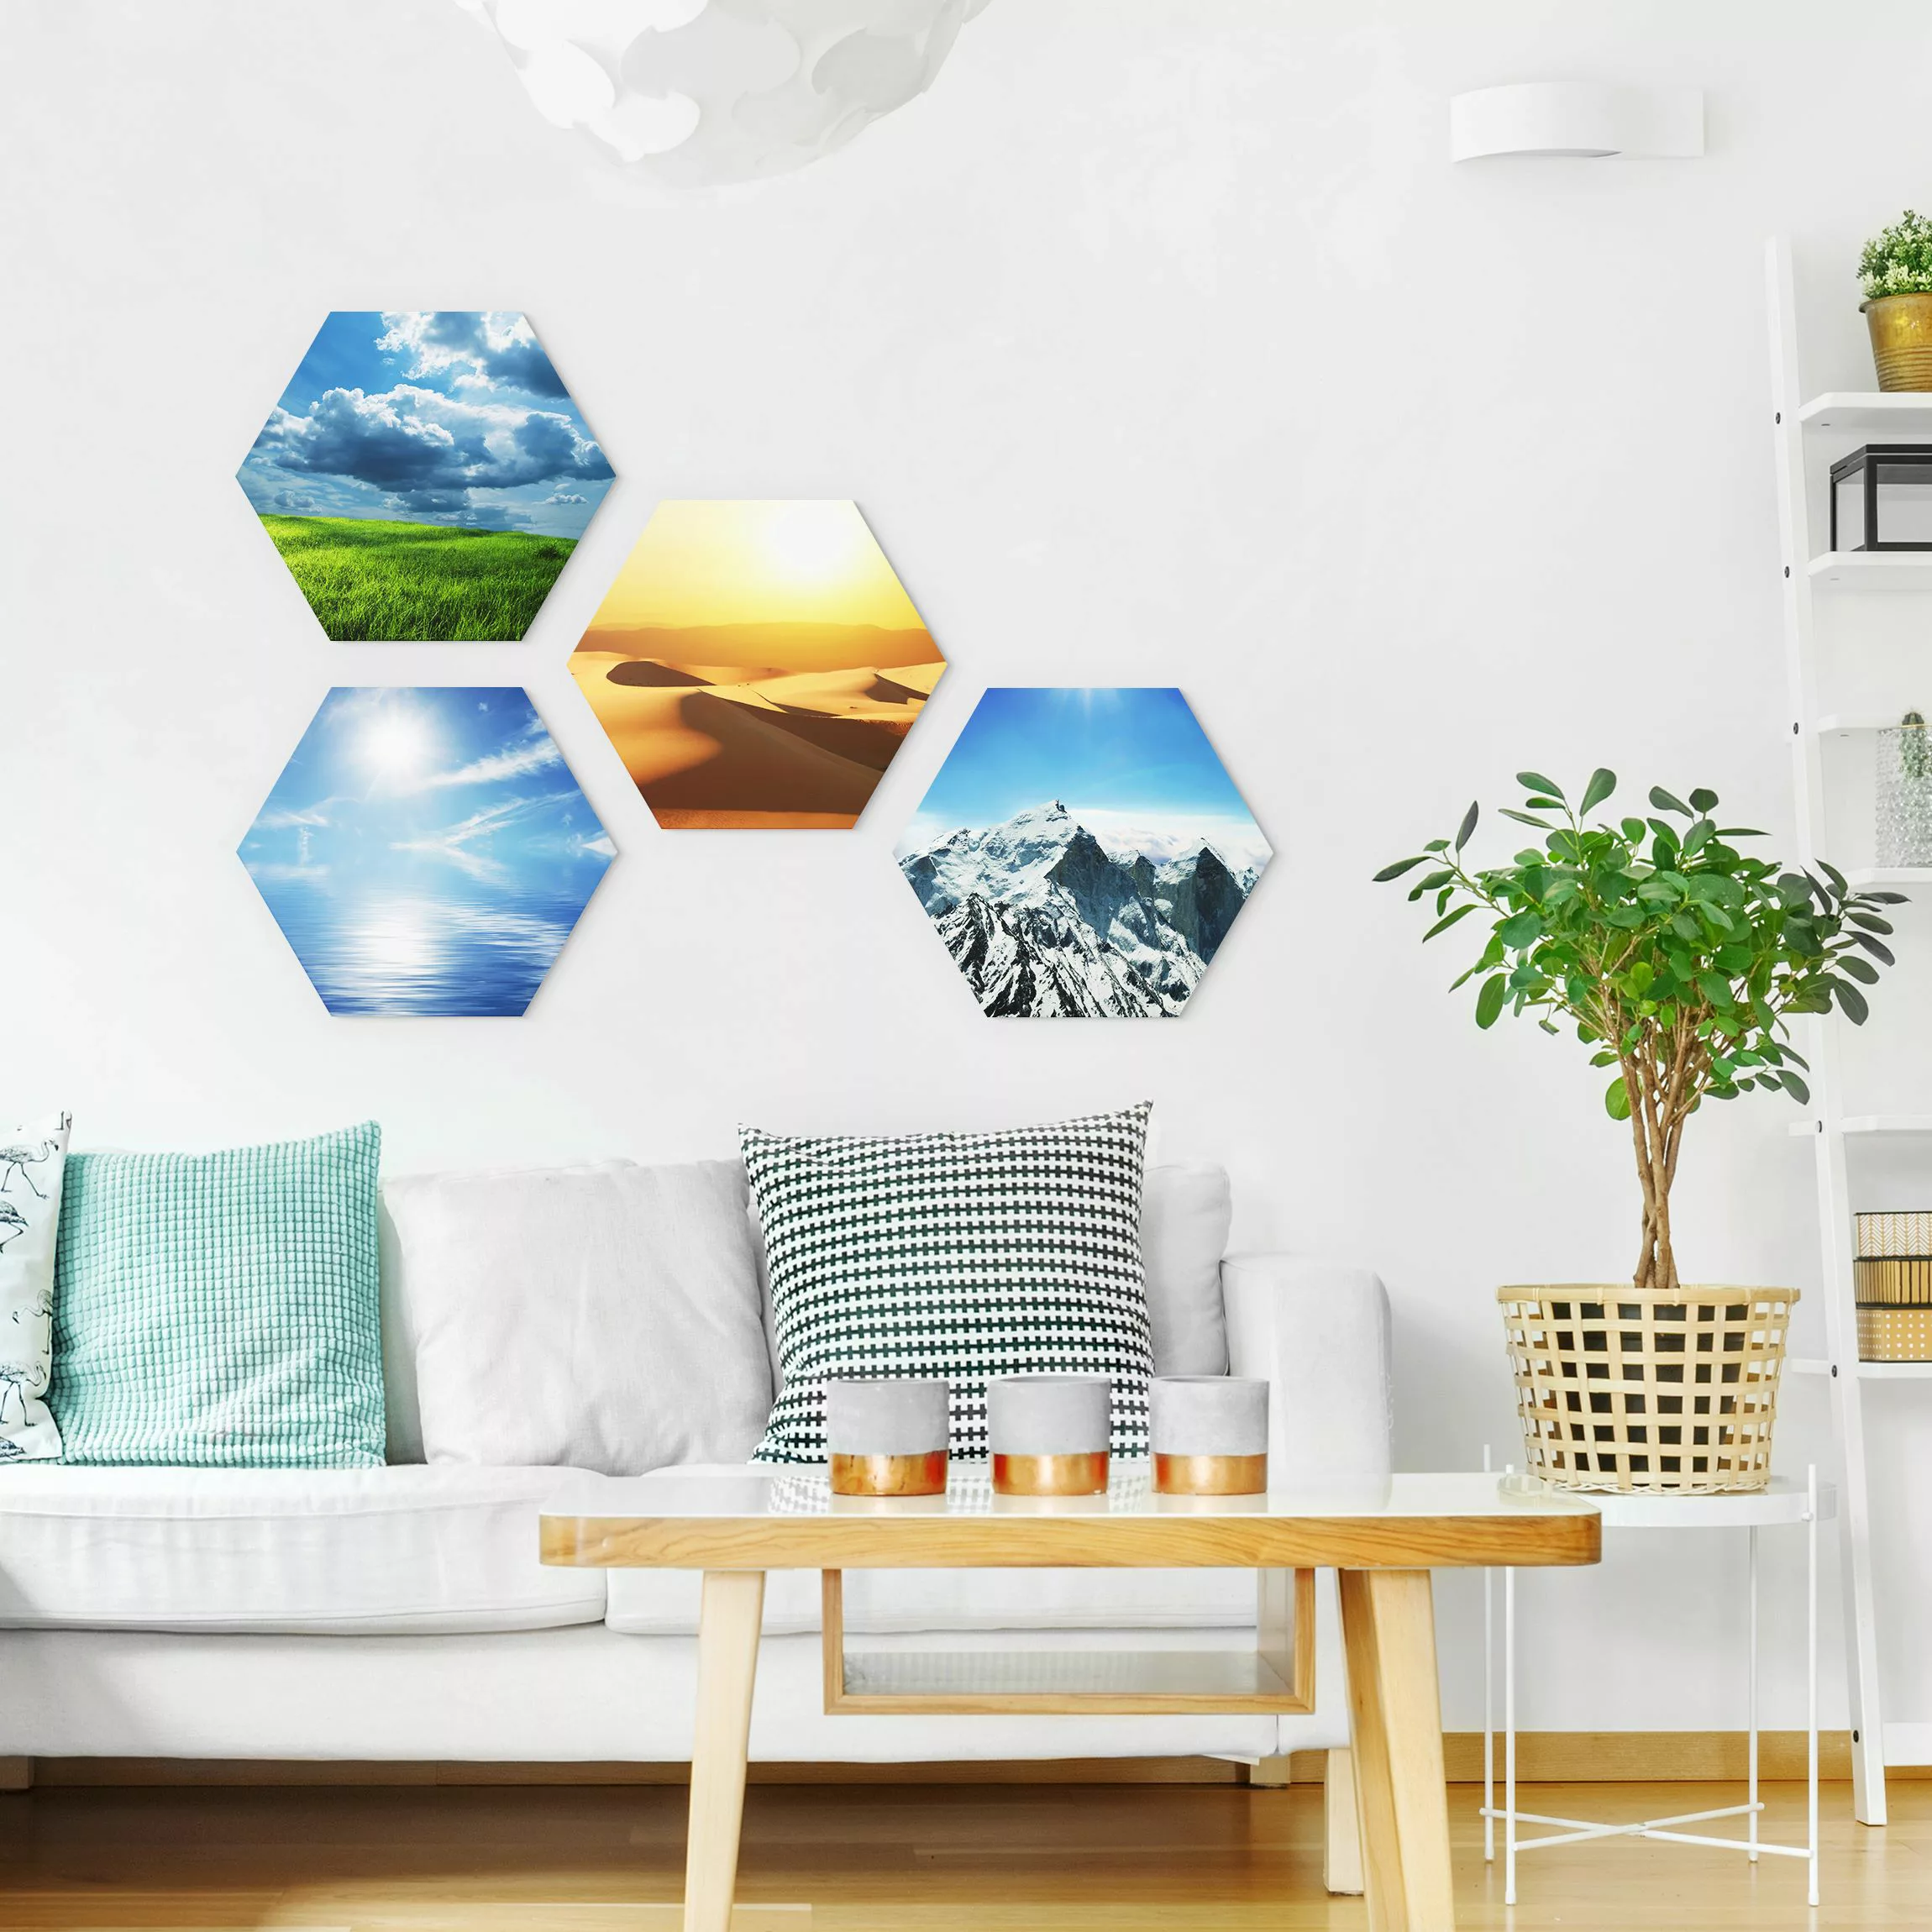 4-teiliges Hexagon-Alu-Dibond Bild Elements günstig online kaufen